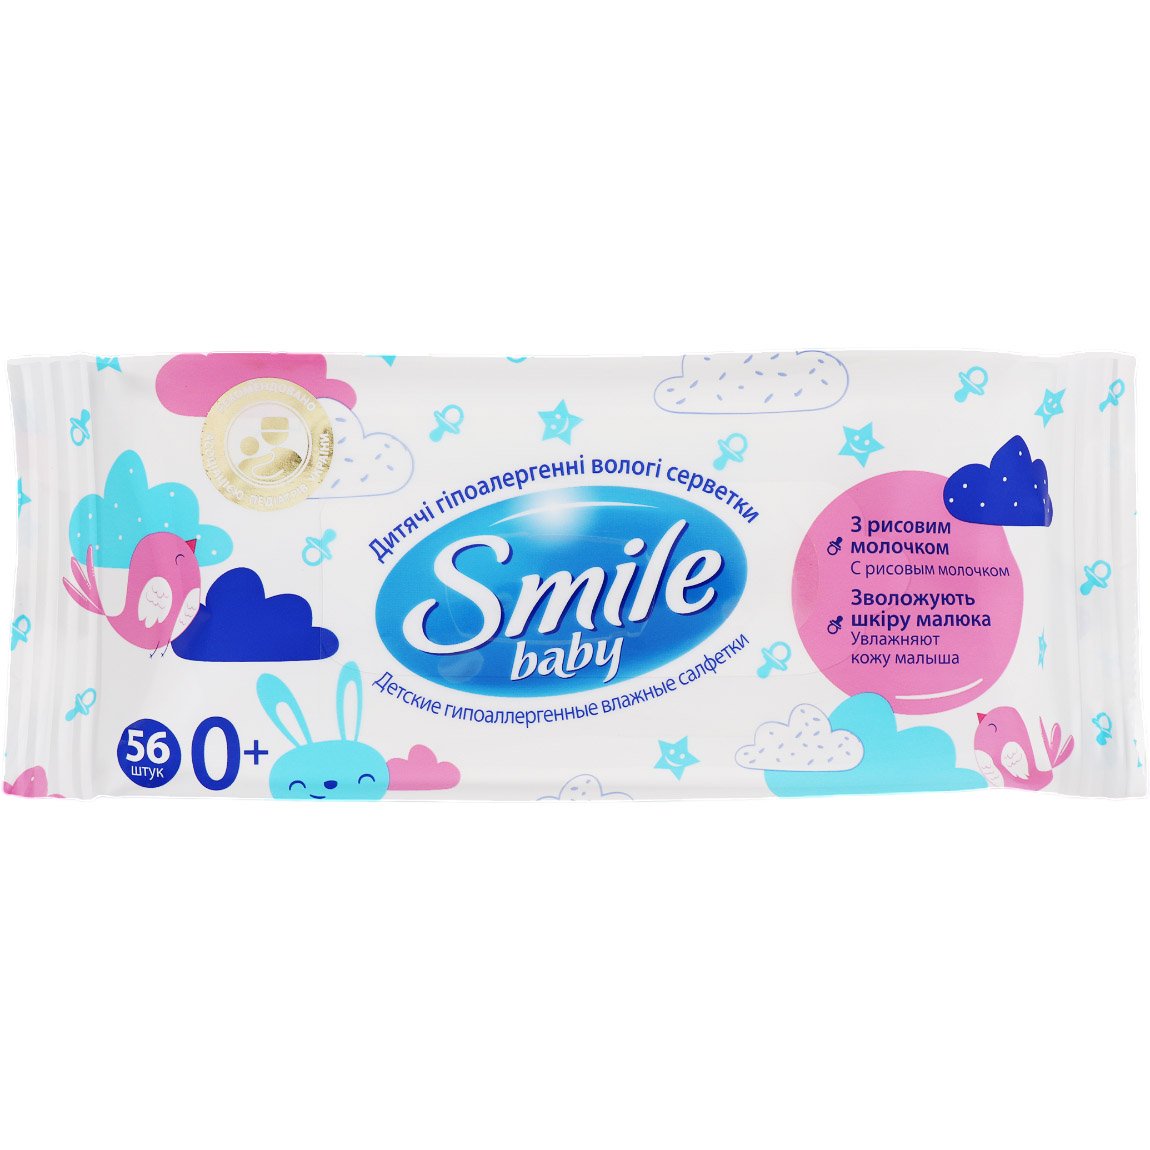 Влажные салфетки Smile baby, с рисовым молочком, 56 шт. - фото 1